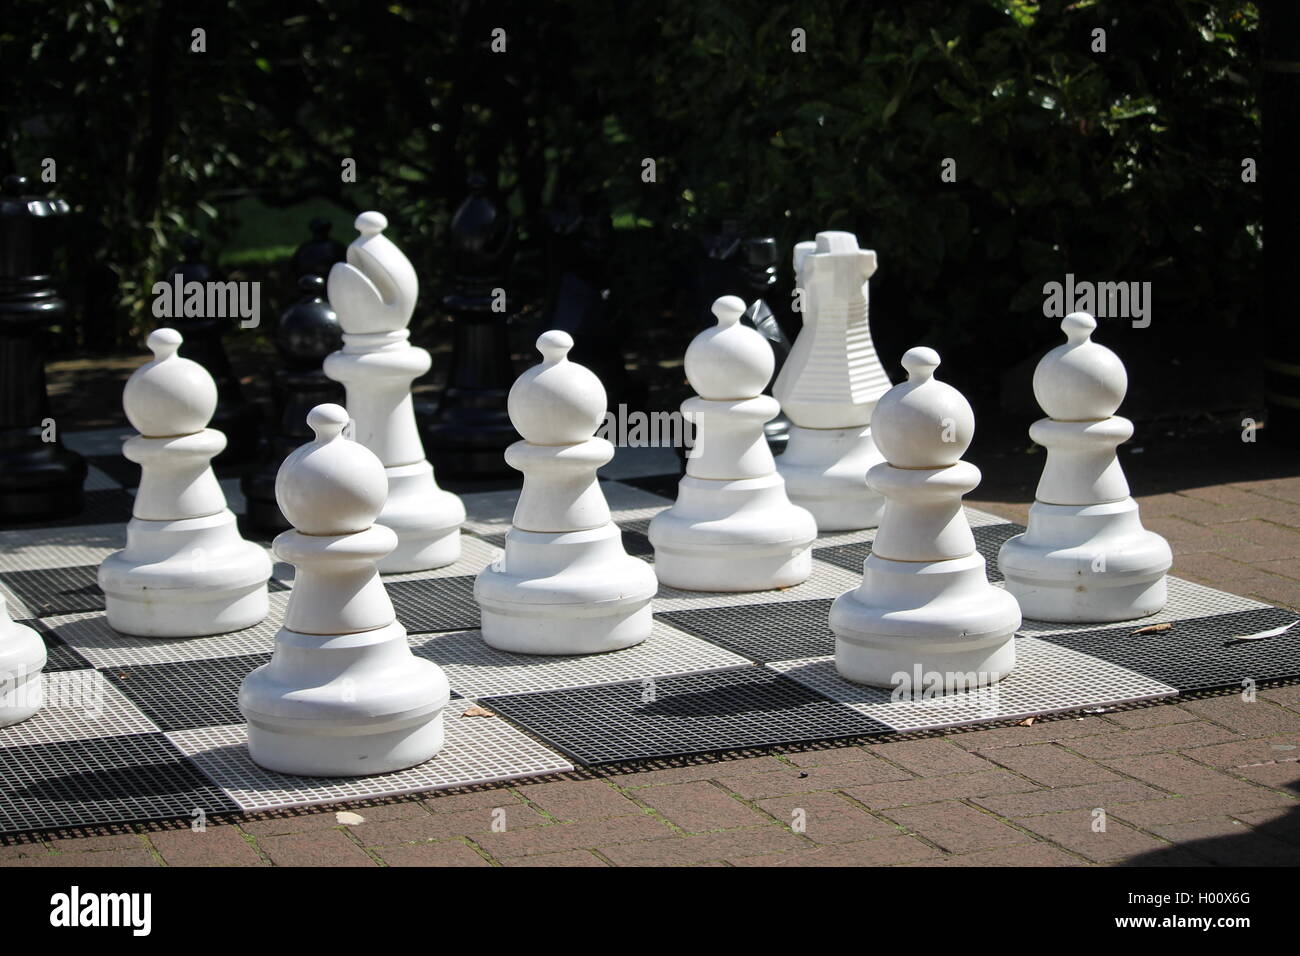 D'échecs géant, jeu de société, jeu, Londres, parc, l'été, jeux, fun, touristiques, jeu de plein air, party, divertissant Banque D'Images